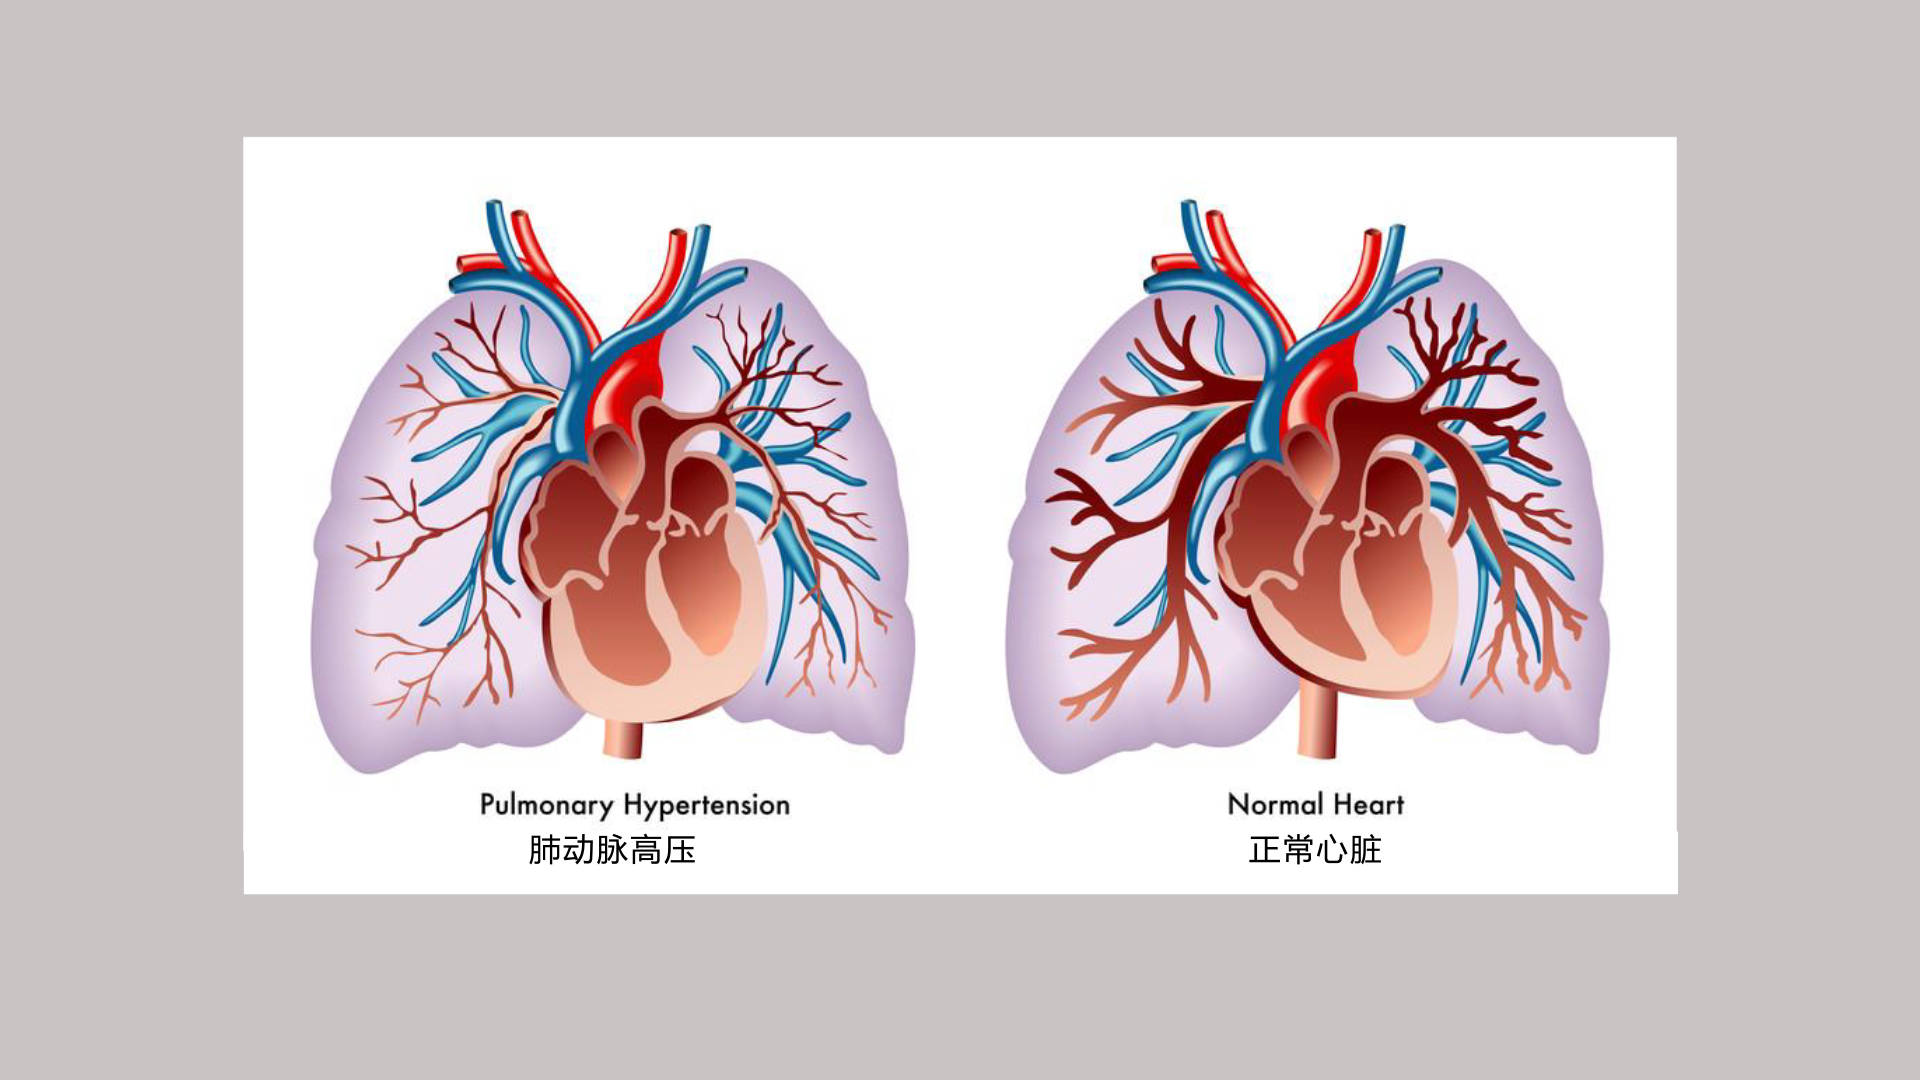 肺动脉位置图图片